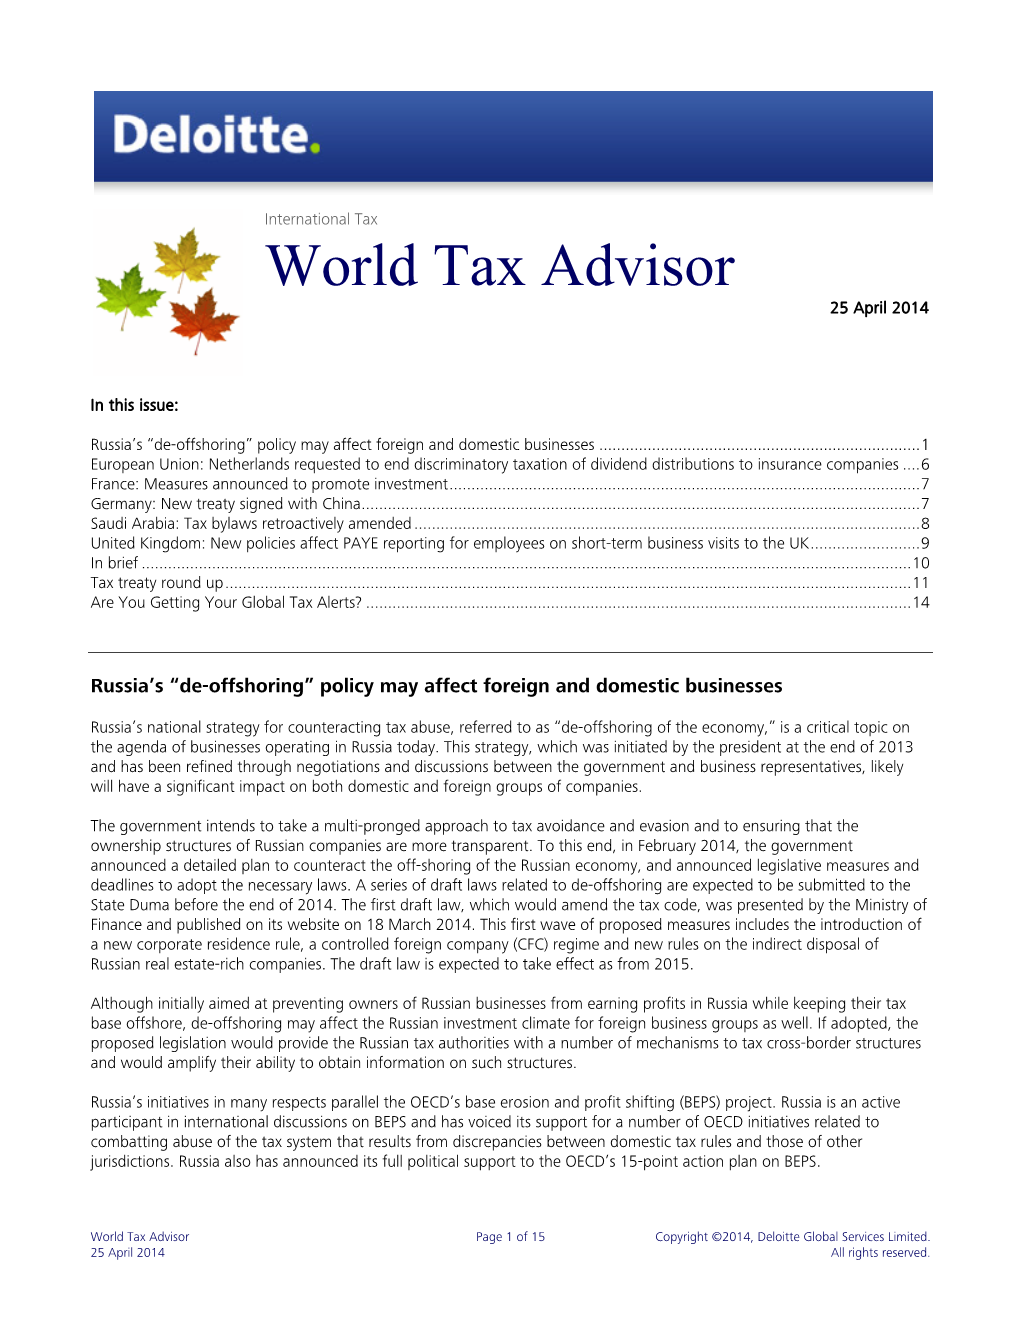 World Tax Advisor 25 April 2014